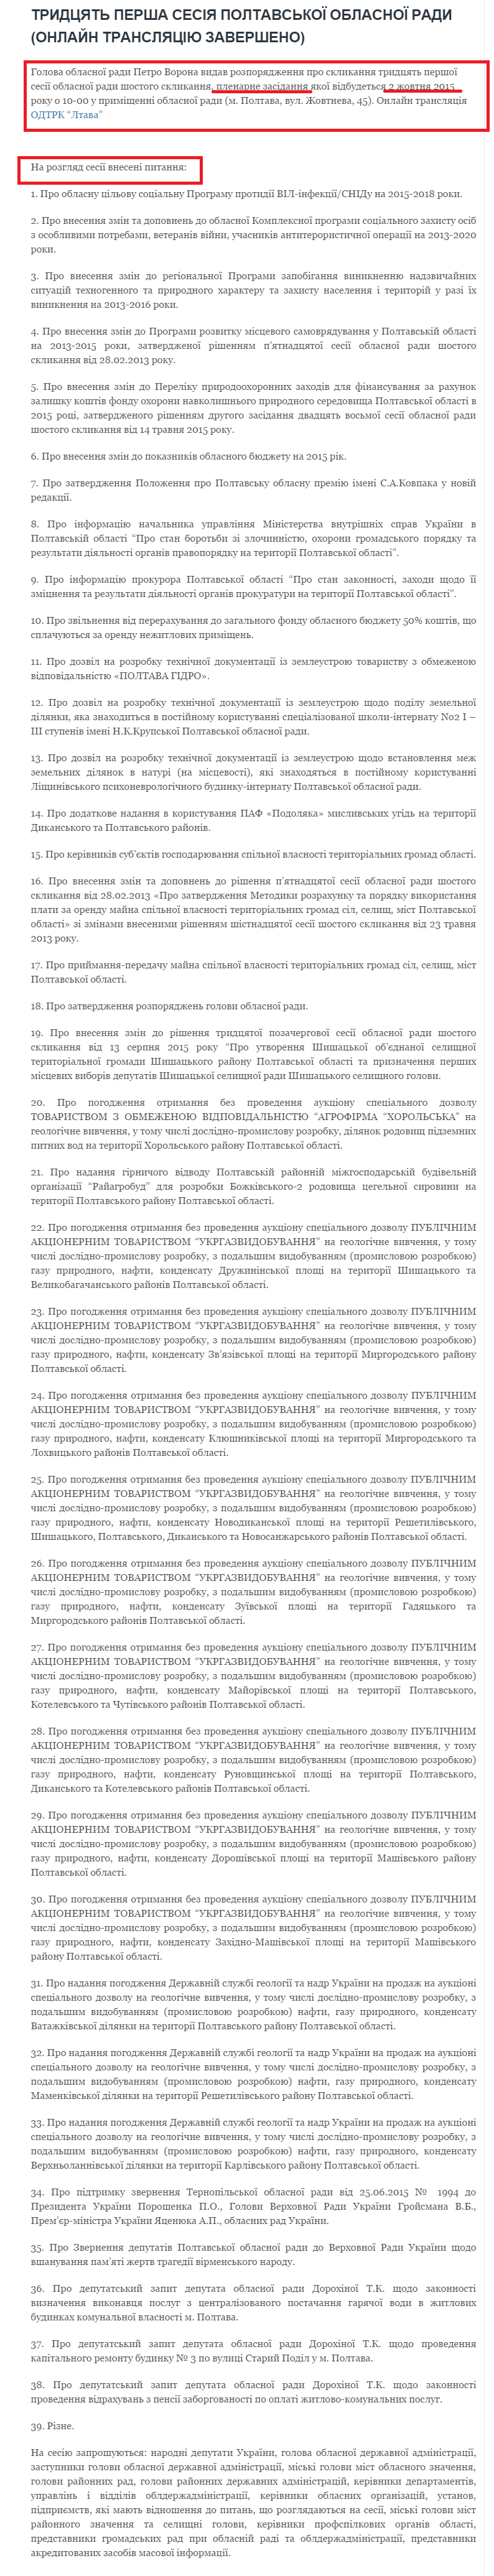 http://np.pl.ua/2015/10/trydtsyat-persha-sesiya-poltavskoji-oblasnoji-rady-onlajn-translyatsiya/